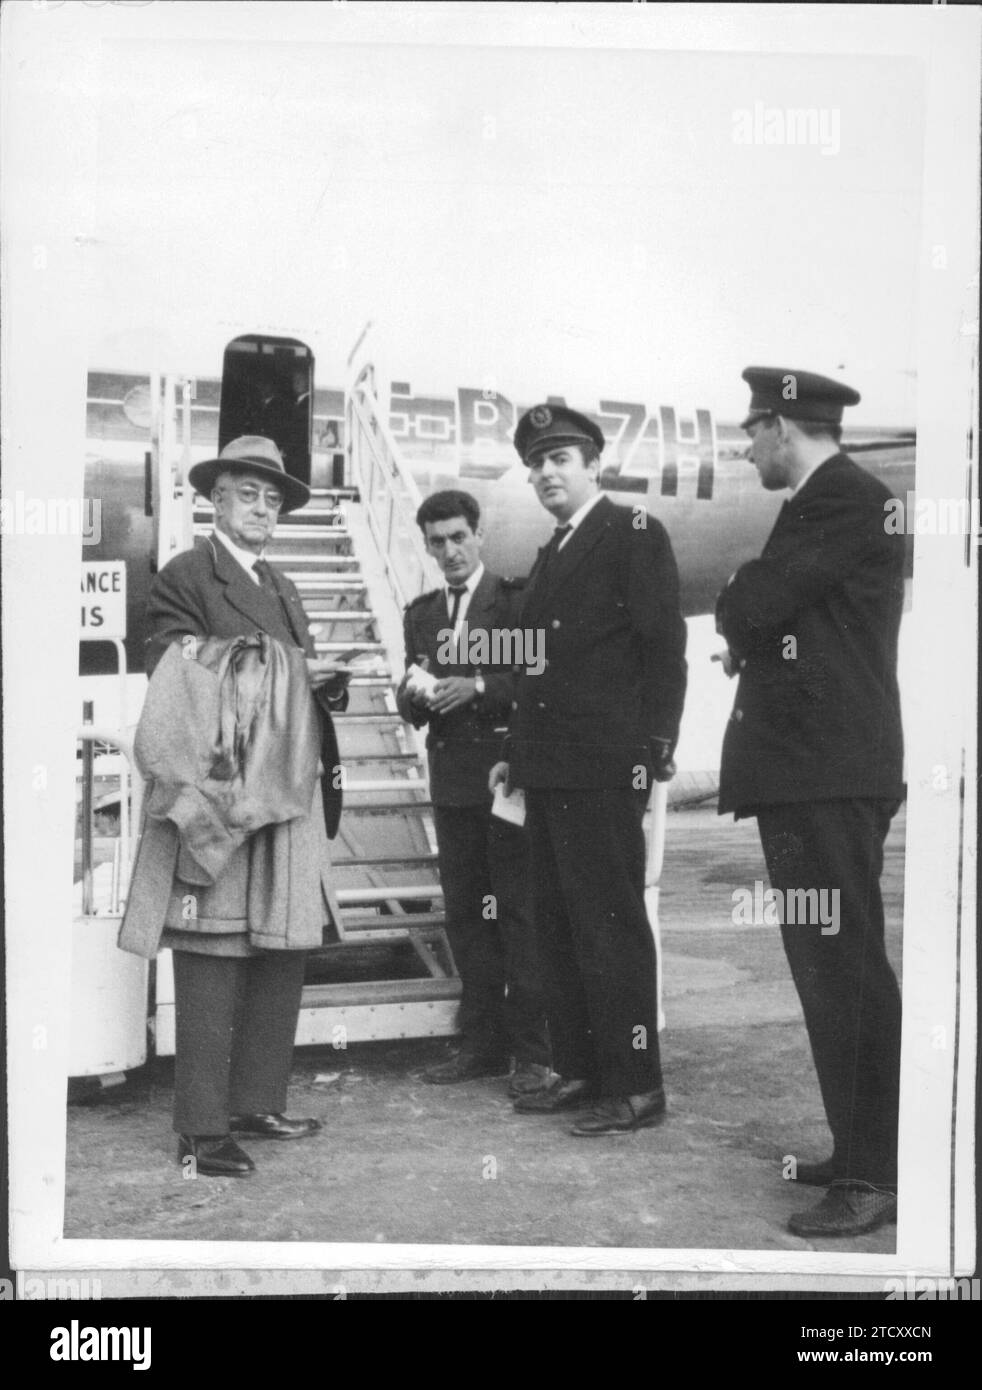 12/31/1958. Il giornalista e collaboratore di ABC, Gregorio Corrochano prima di salire a bordo dell'aereo per l'Algeria. Crediti: Album / Archivo ABC / Cano Foto Stock